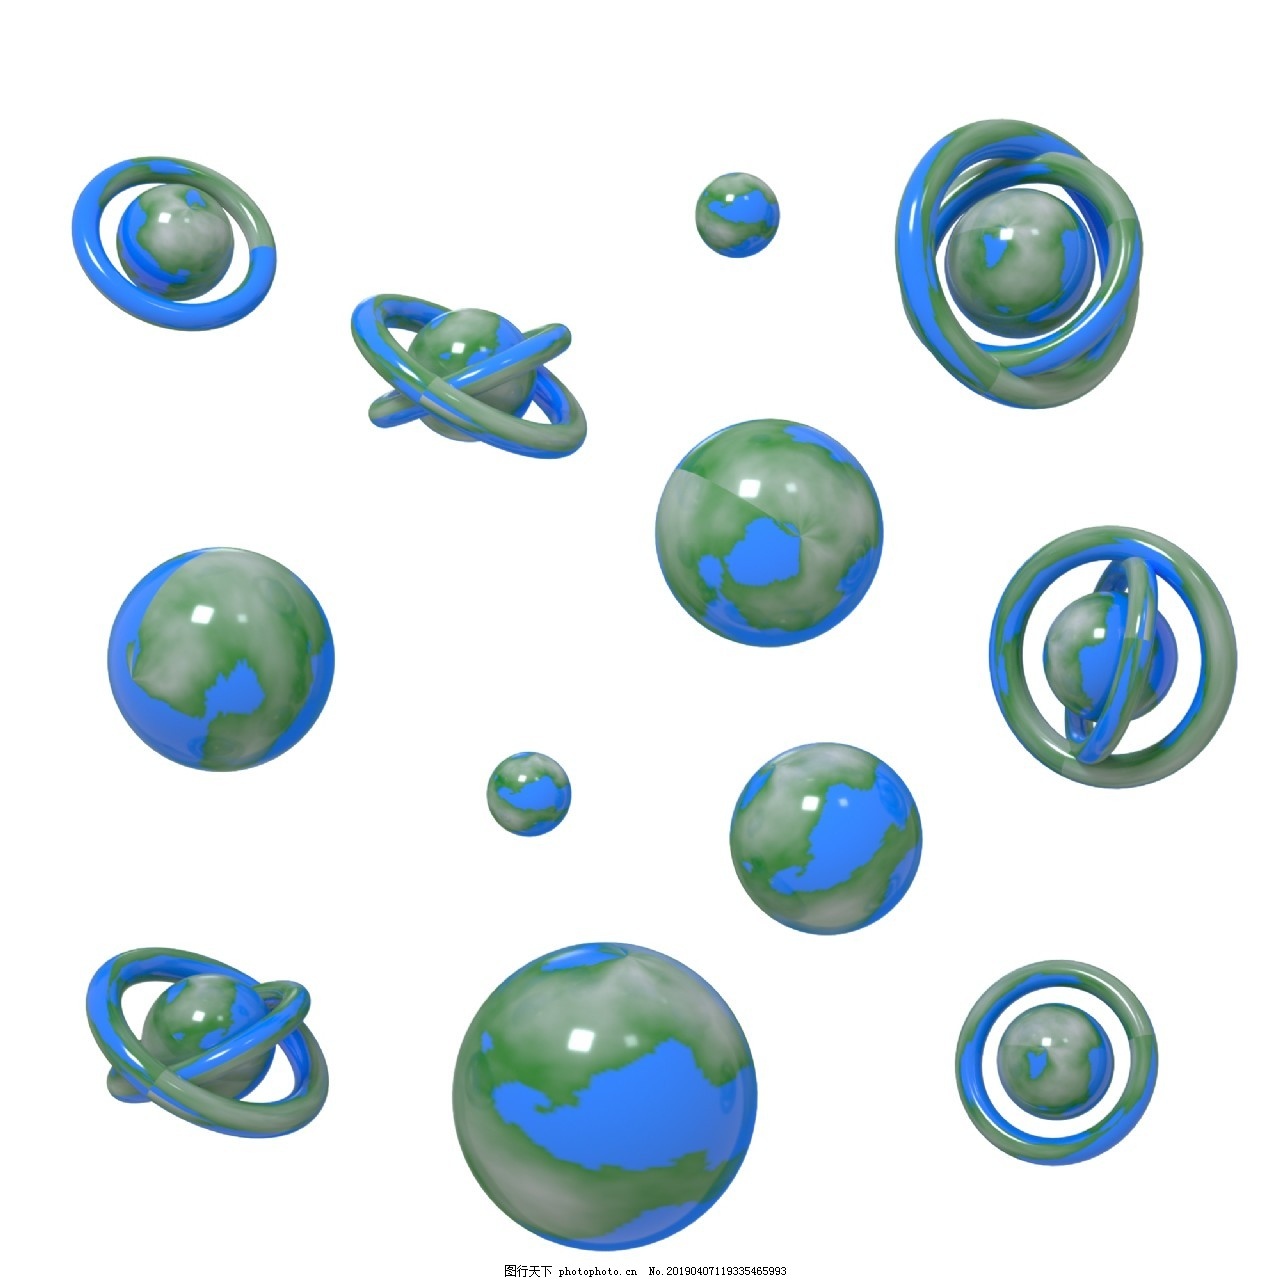 ‘~C4D蓝绿色地球立体装饰漂浮元素图片_漂浮素材_平面创作元素-  ~’ 的图片